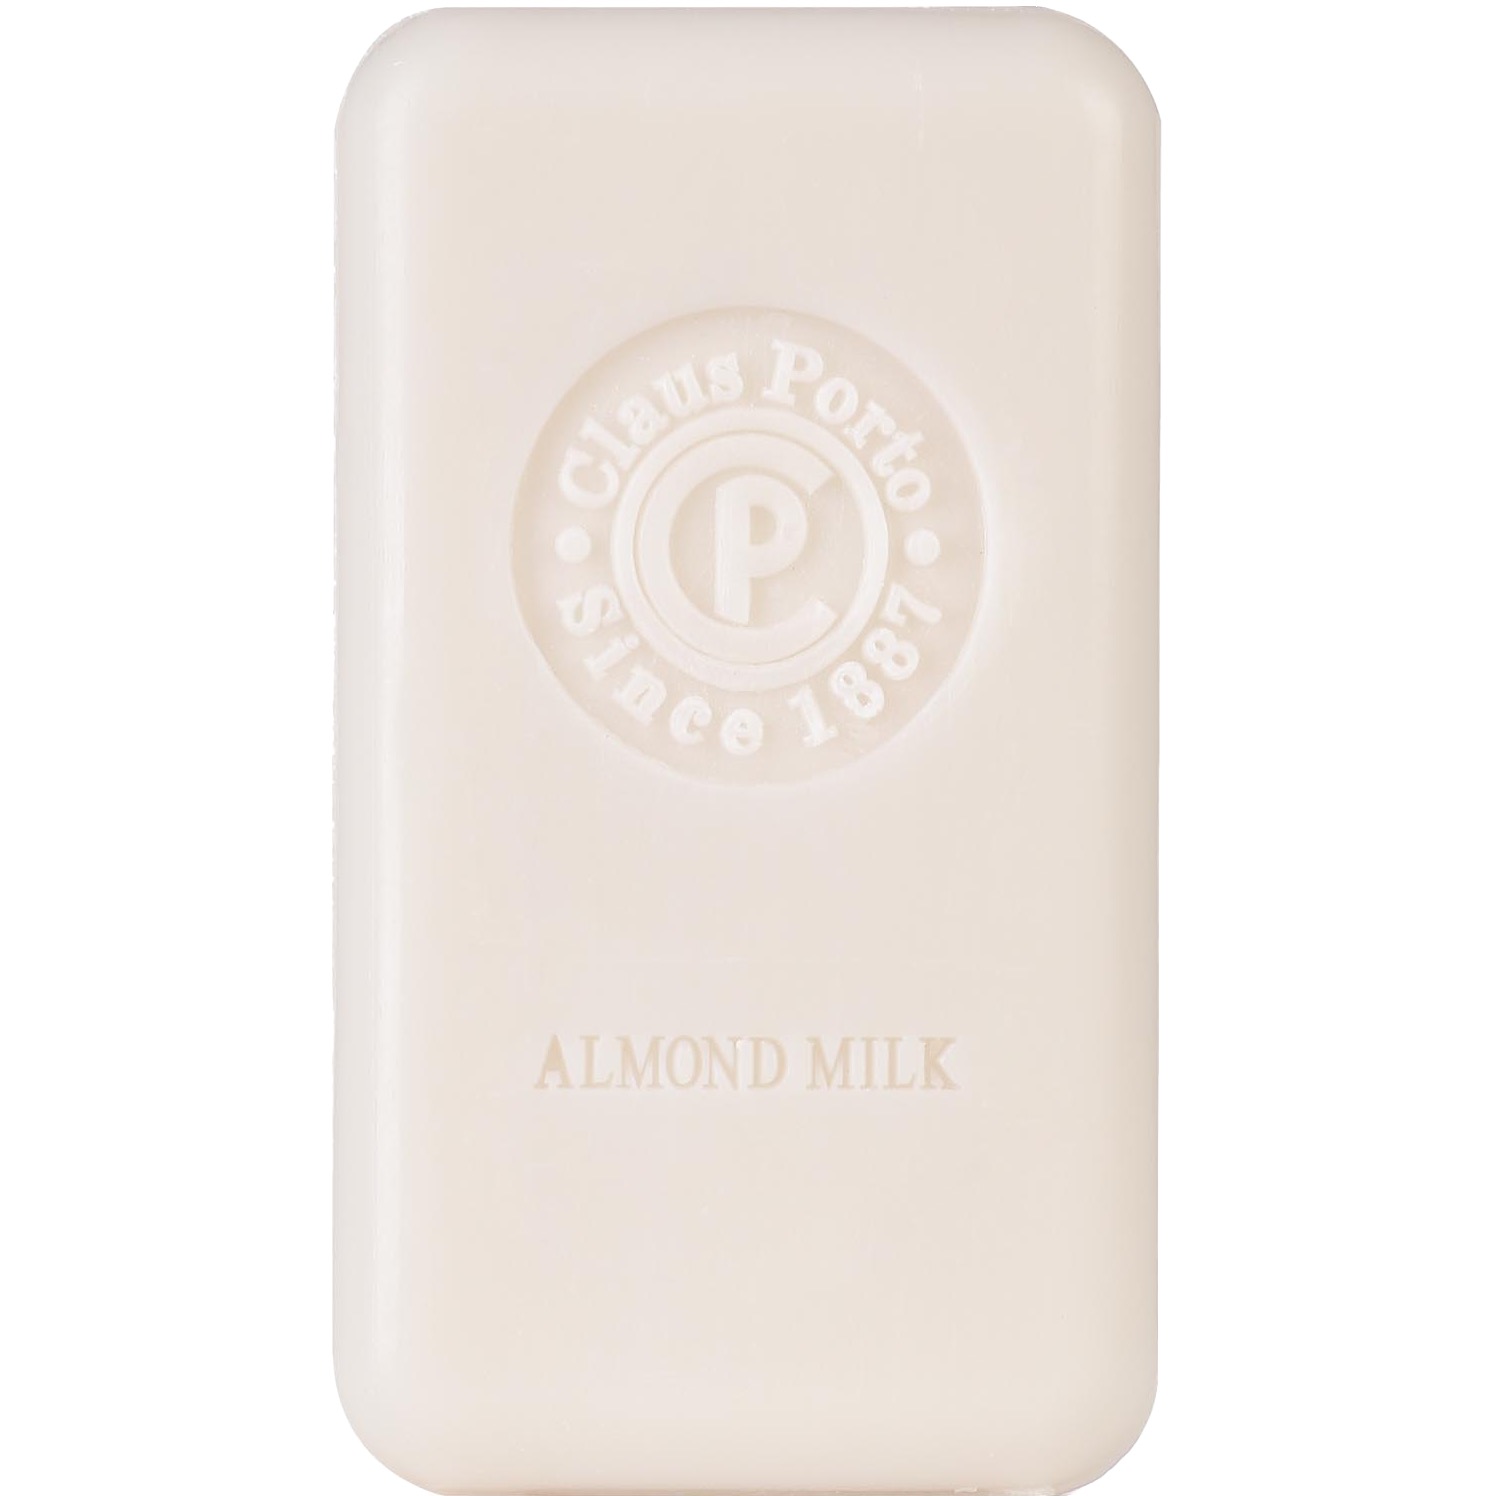 Claus Porto Soap Bar Double Almond Milk 150g - 1.2 - CP-C005W